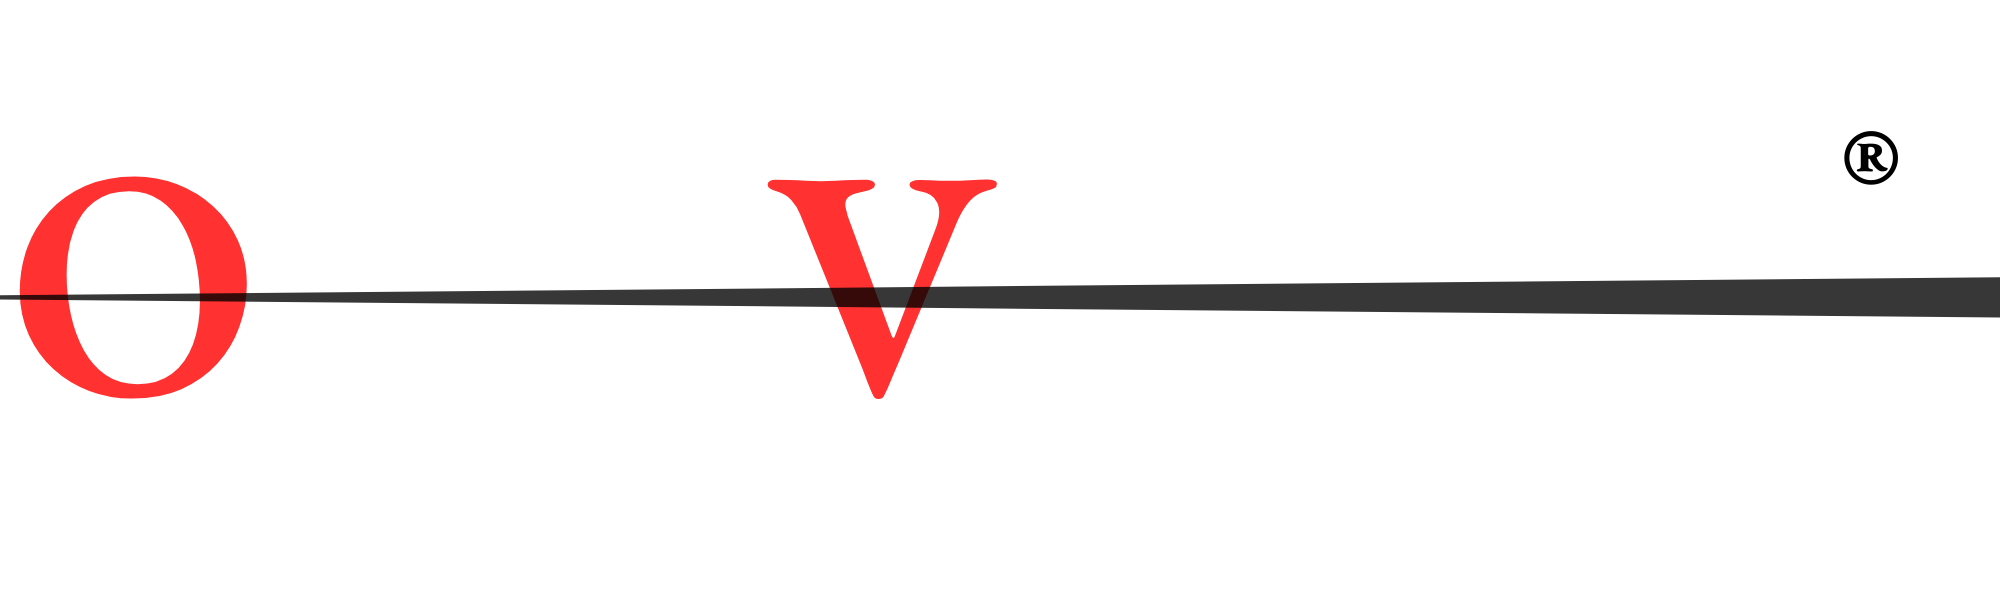 IPTV kopen